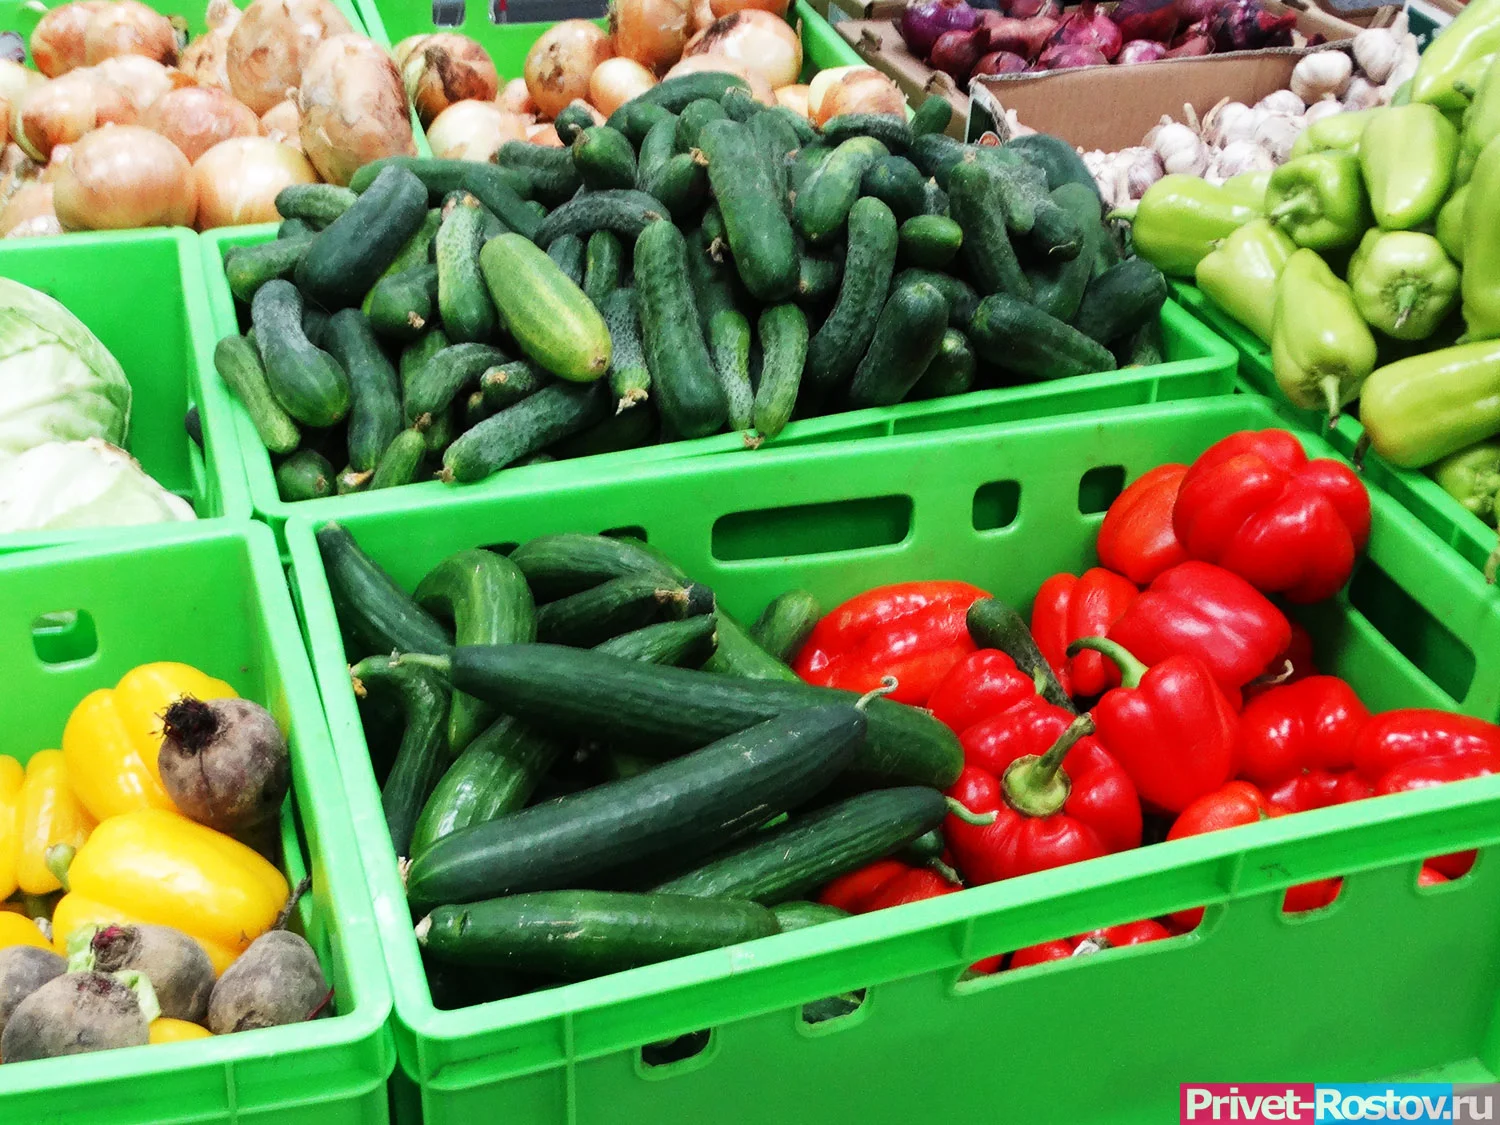 Россияне употребляют килограммами: назван овощ‚ который мгновенно убивает органы: а мы его уплетаем килограммами